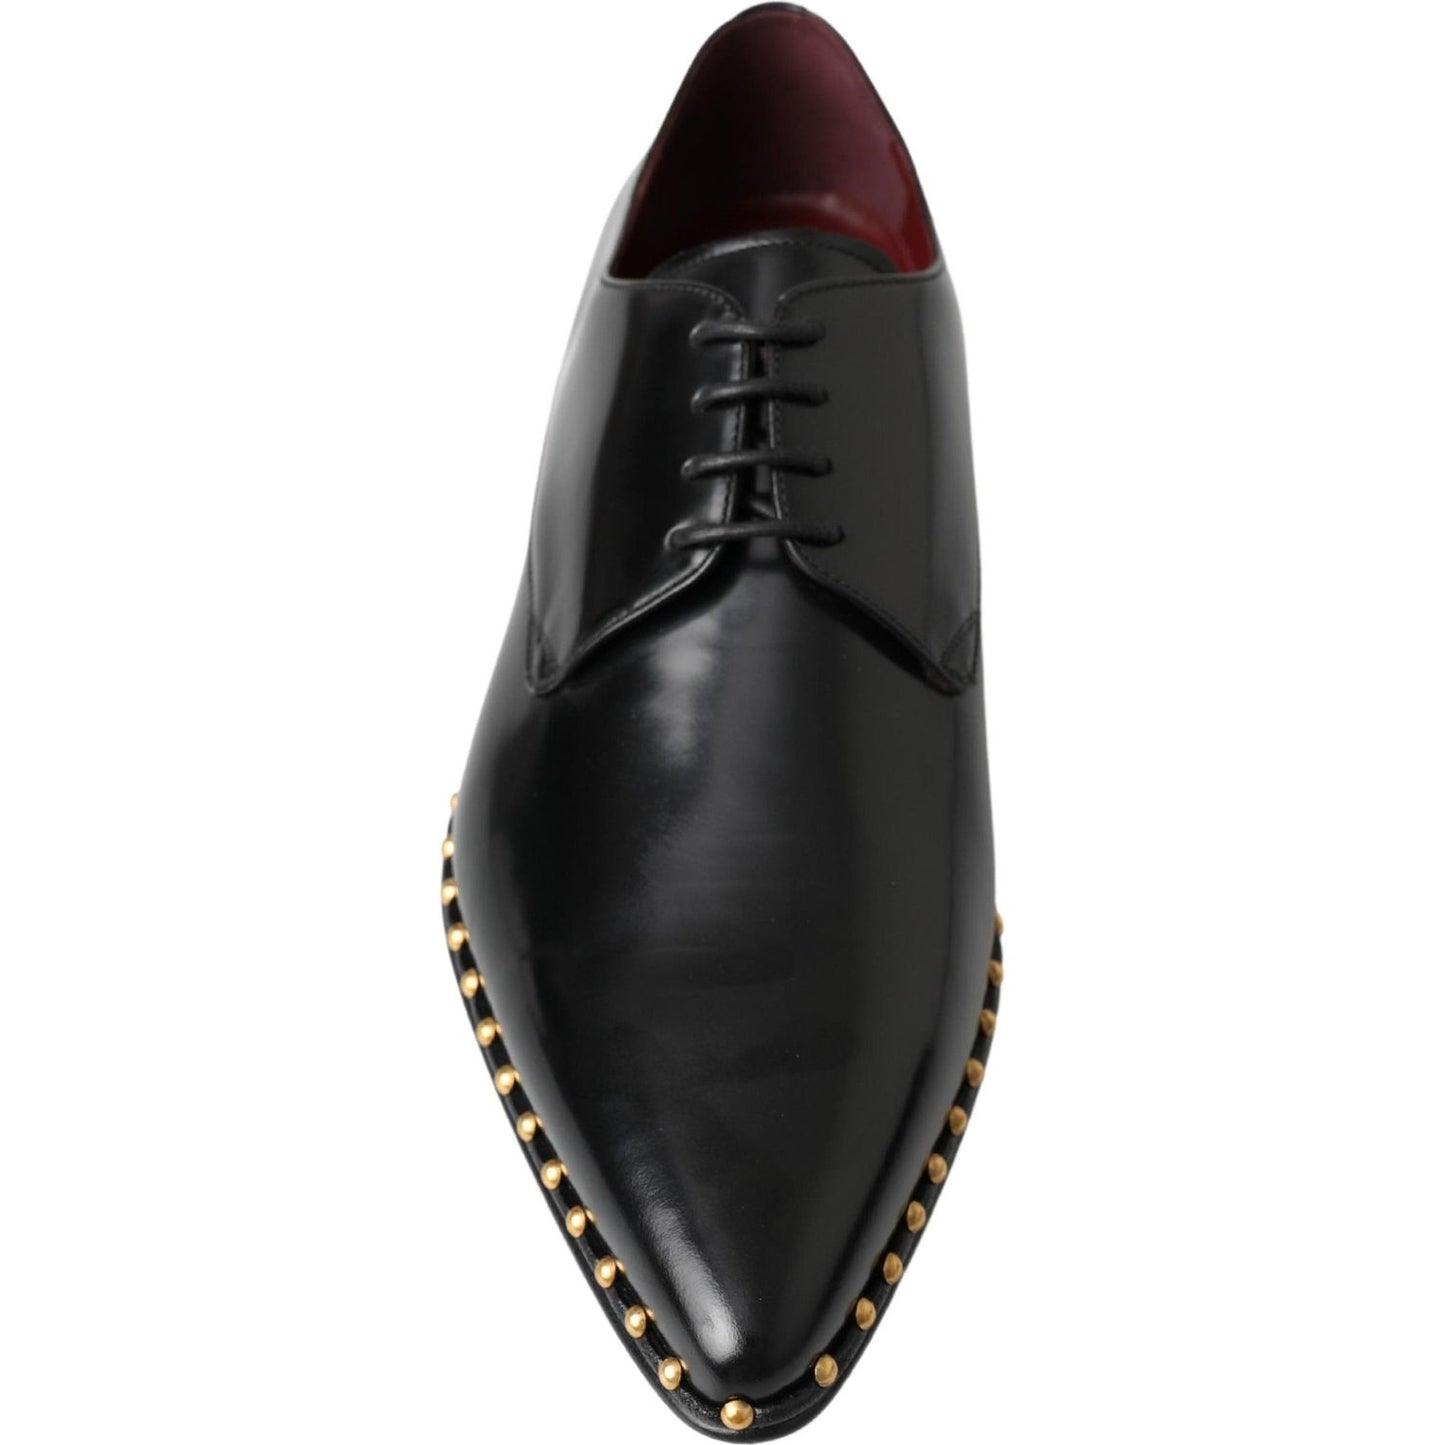 Dolce & Gabbana Elegant Studded Derby Formal Shoes black-derby-gold-studded-leather-shoes